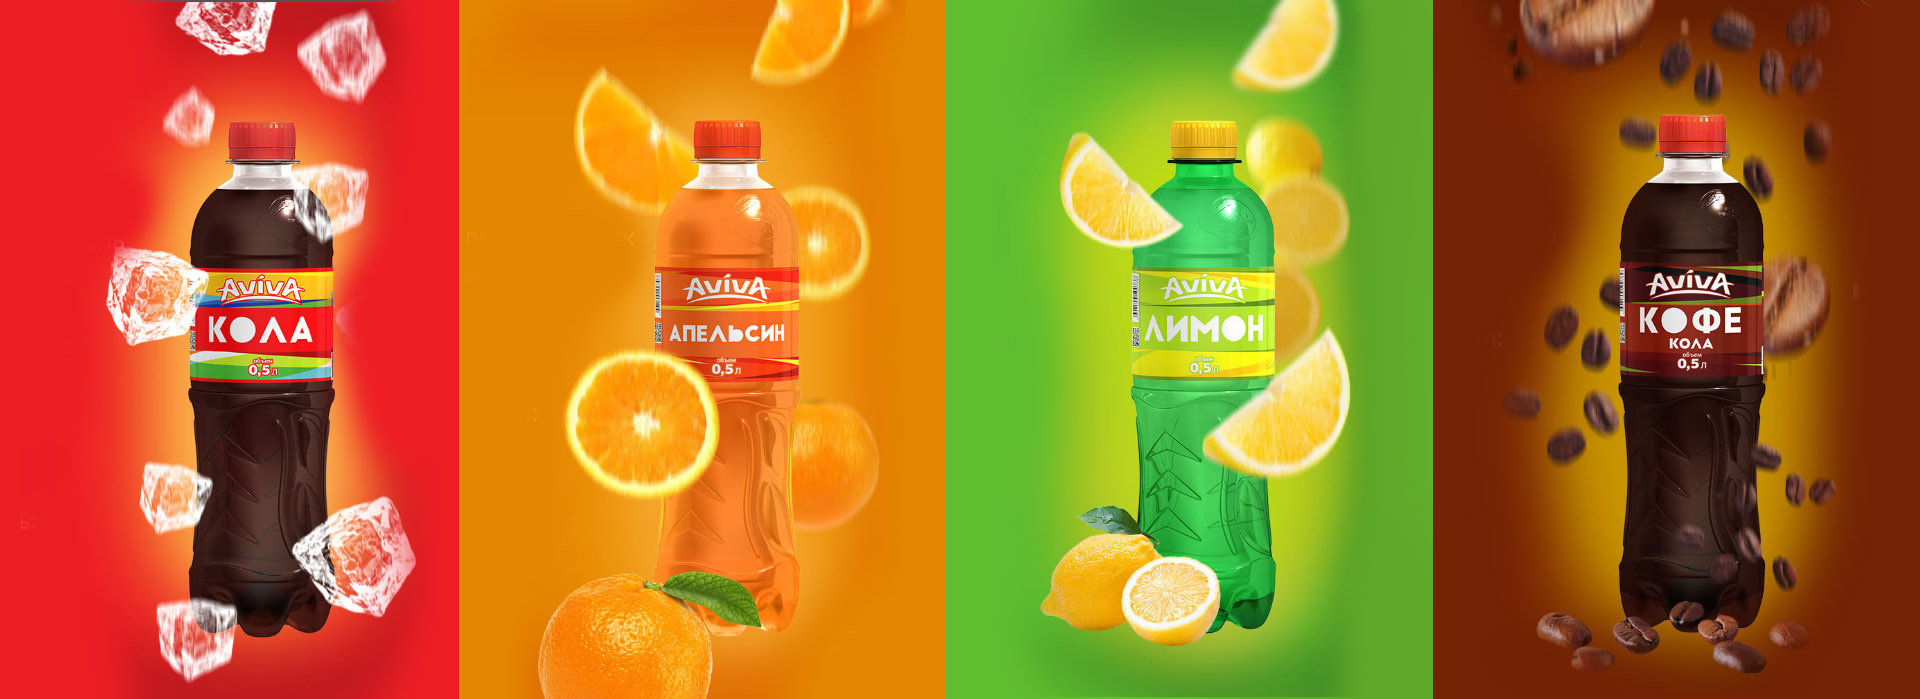 Soda label design, дизайн этикетки лимонада